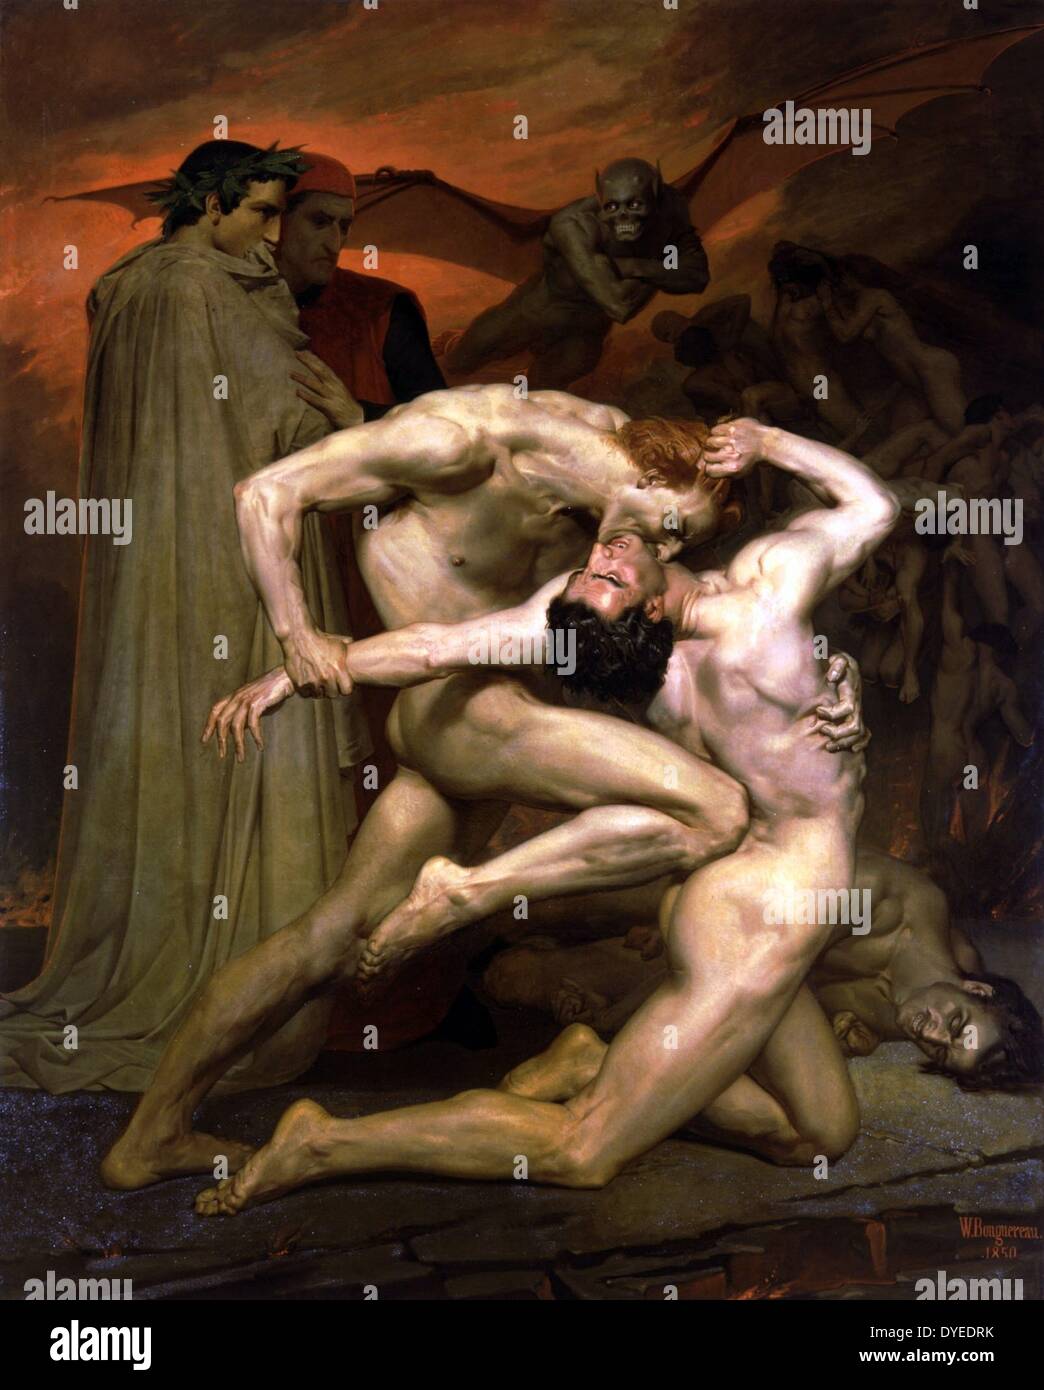 Dante und Vergil In der Hölle 1850. Von dem französischen Künstler William-Adolphe Bouguereau gemalt. Öl auf Leinwand Stockfoto